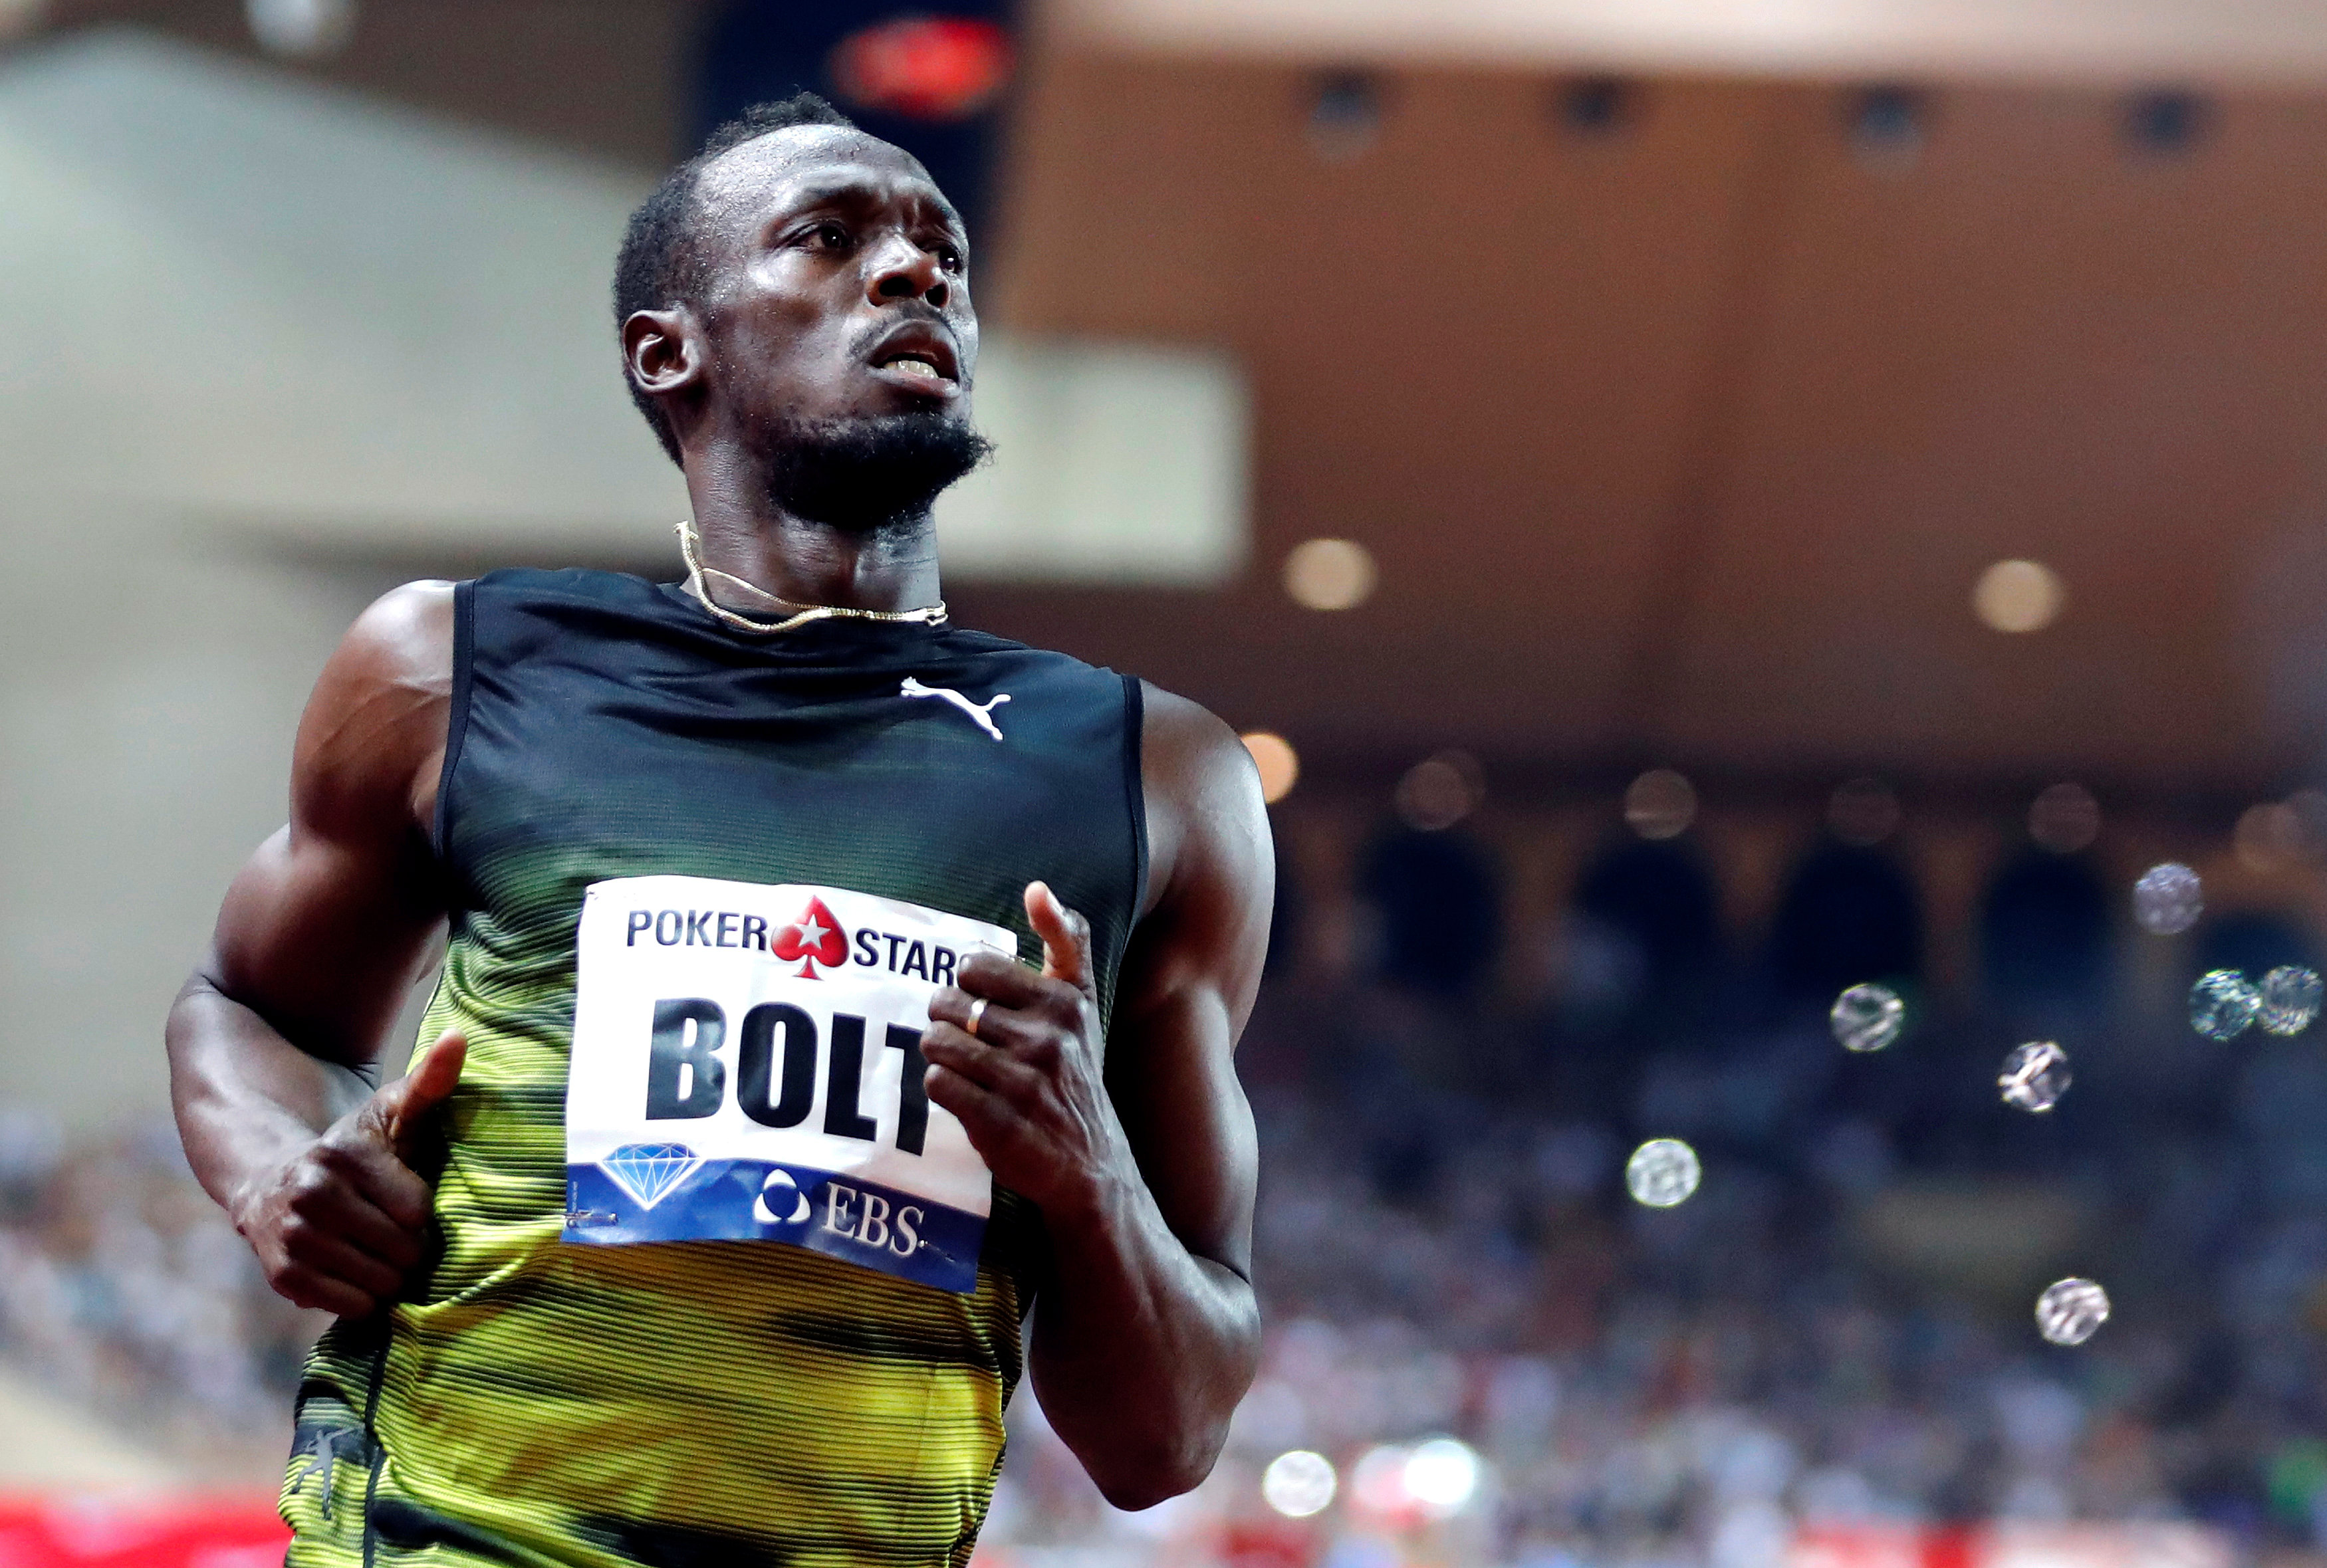 Bolt afila sus garras en la Liga Diamante con tiempo de 9.95